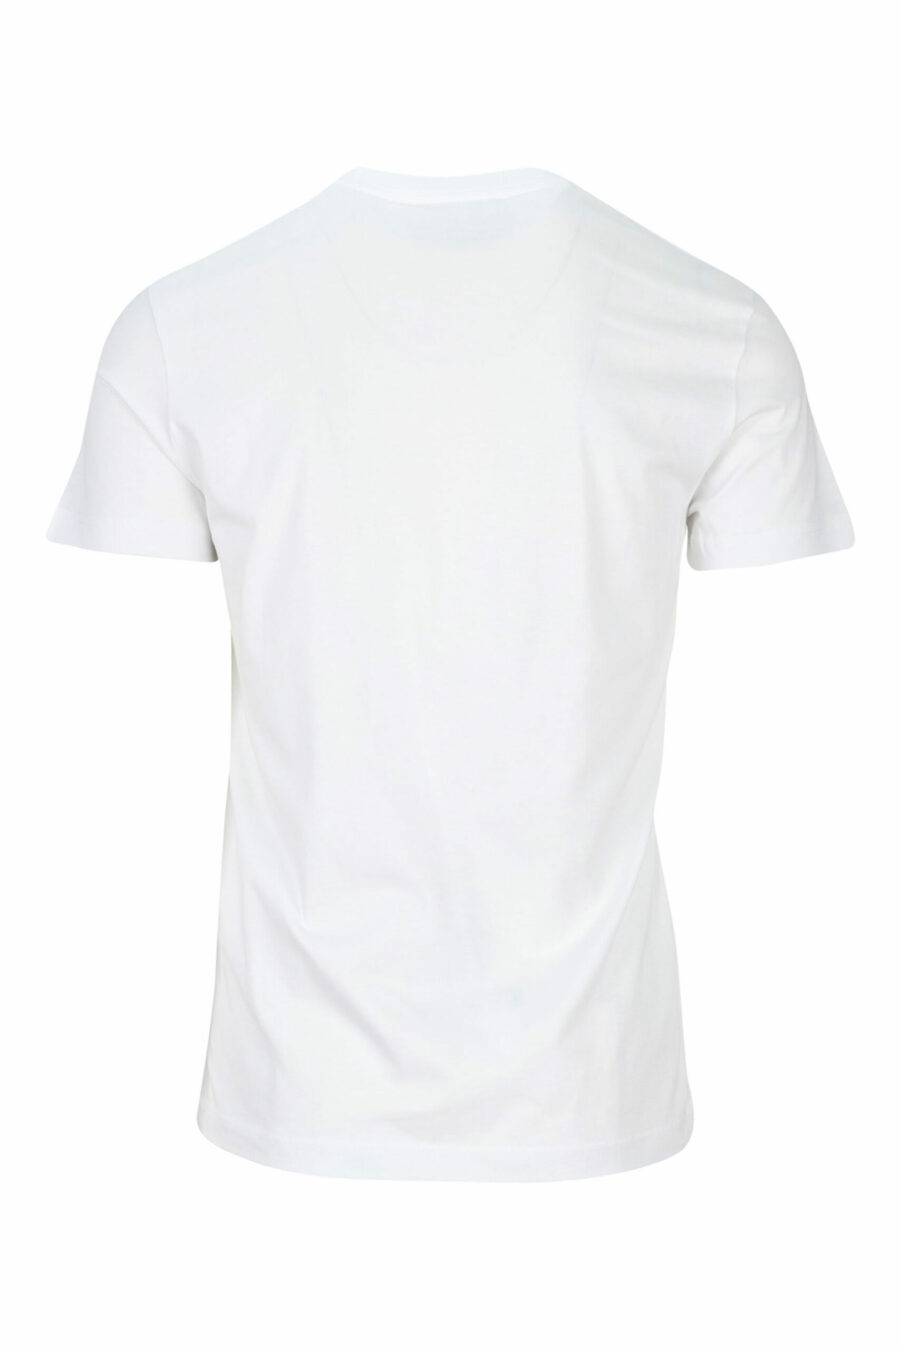 T-shirt blanc avec minilogue argenté "numéro de pièce" - 8052019456936 1 à l'échelle